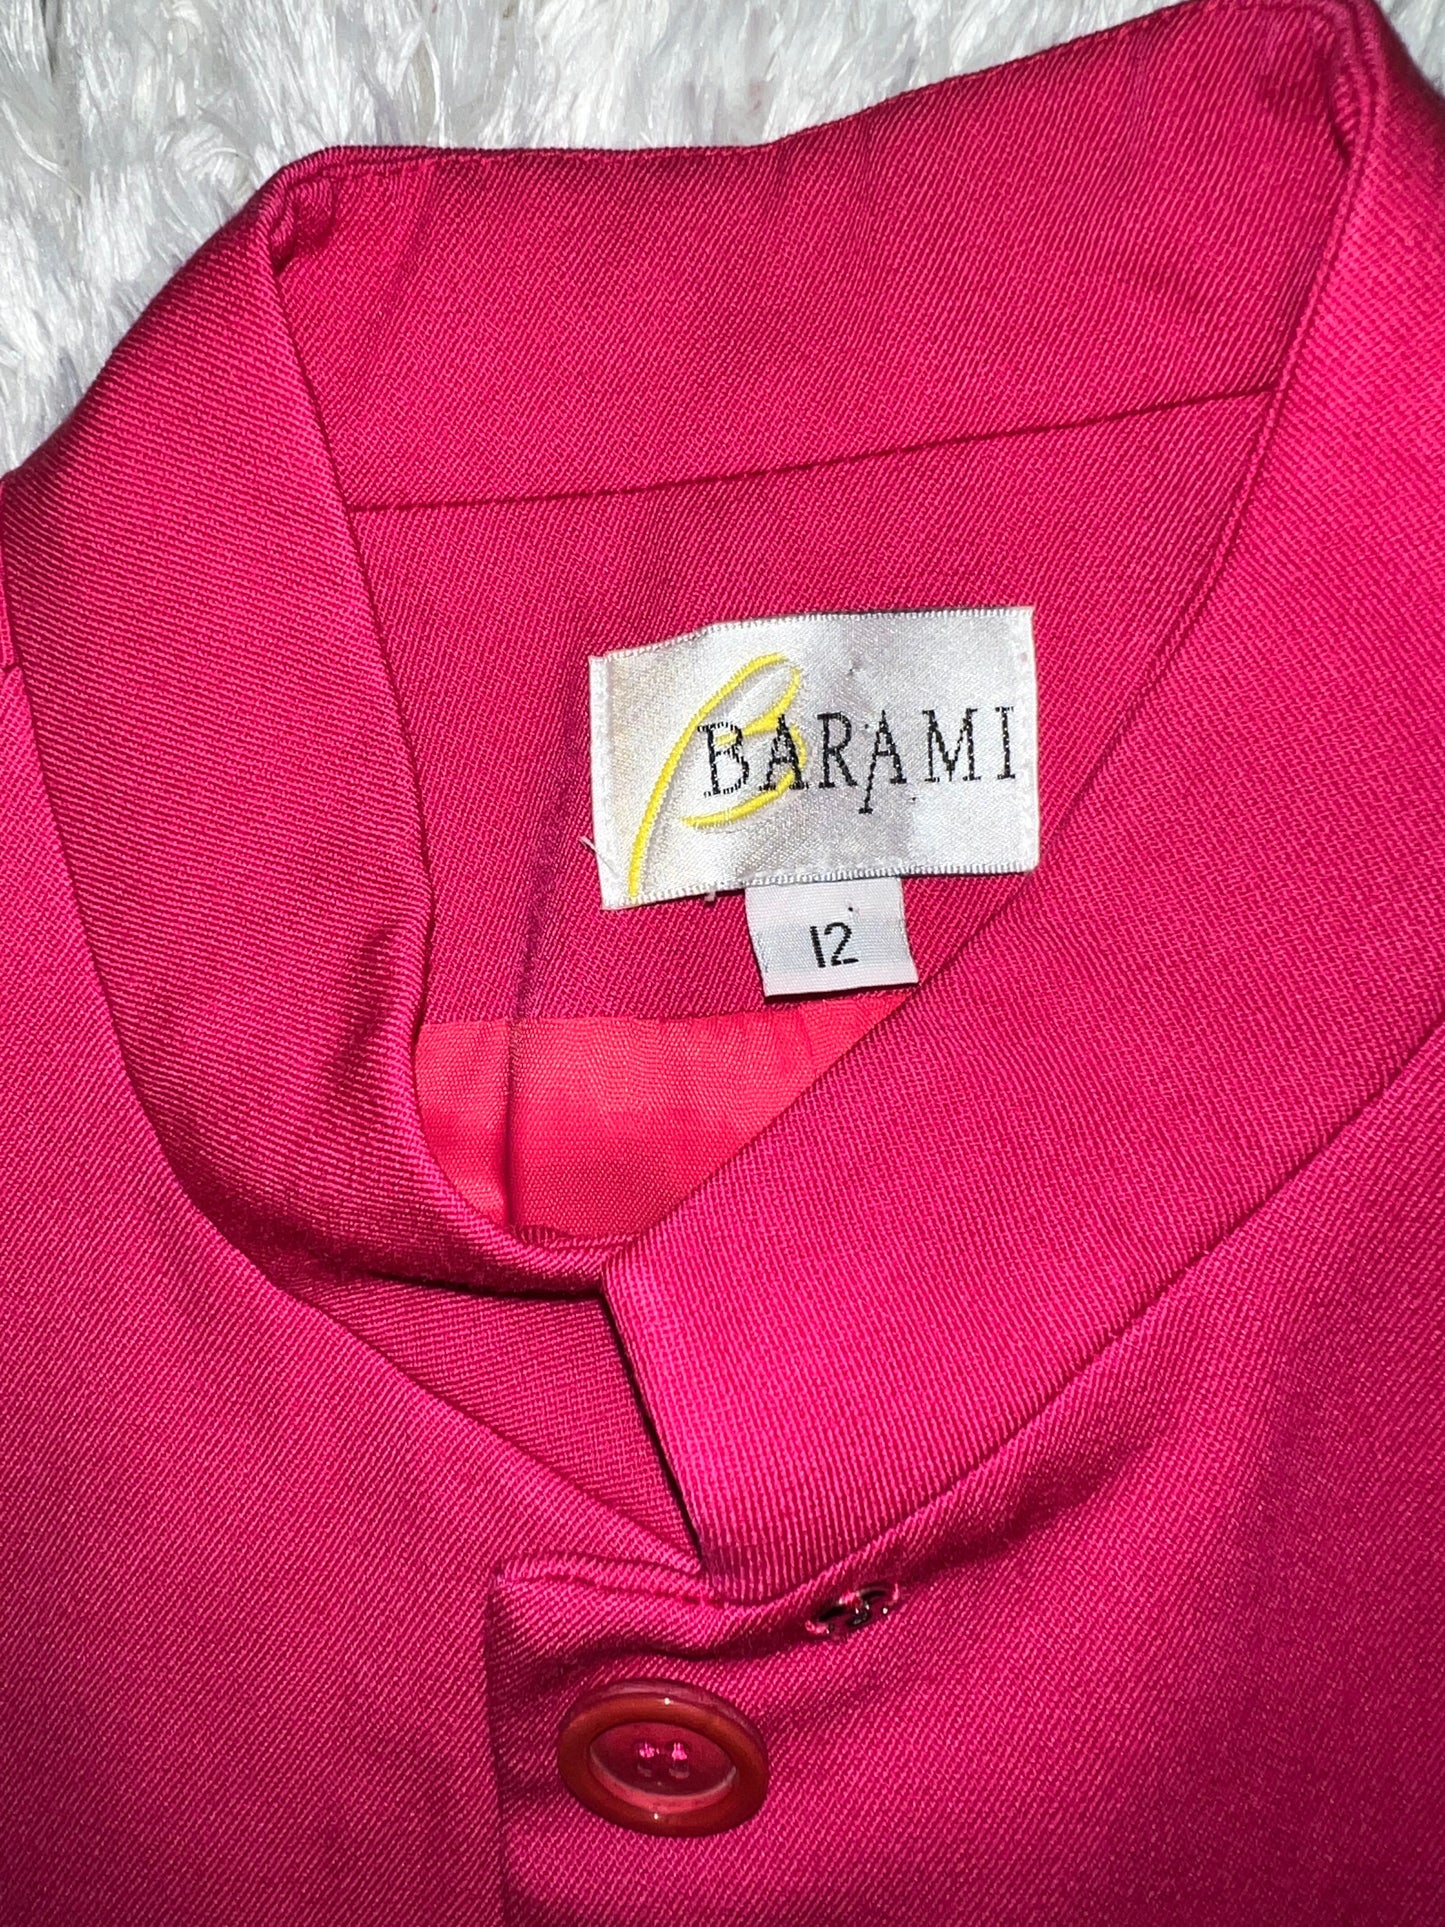 Barami Hot Pink Suit